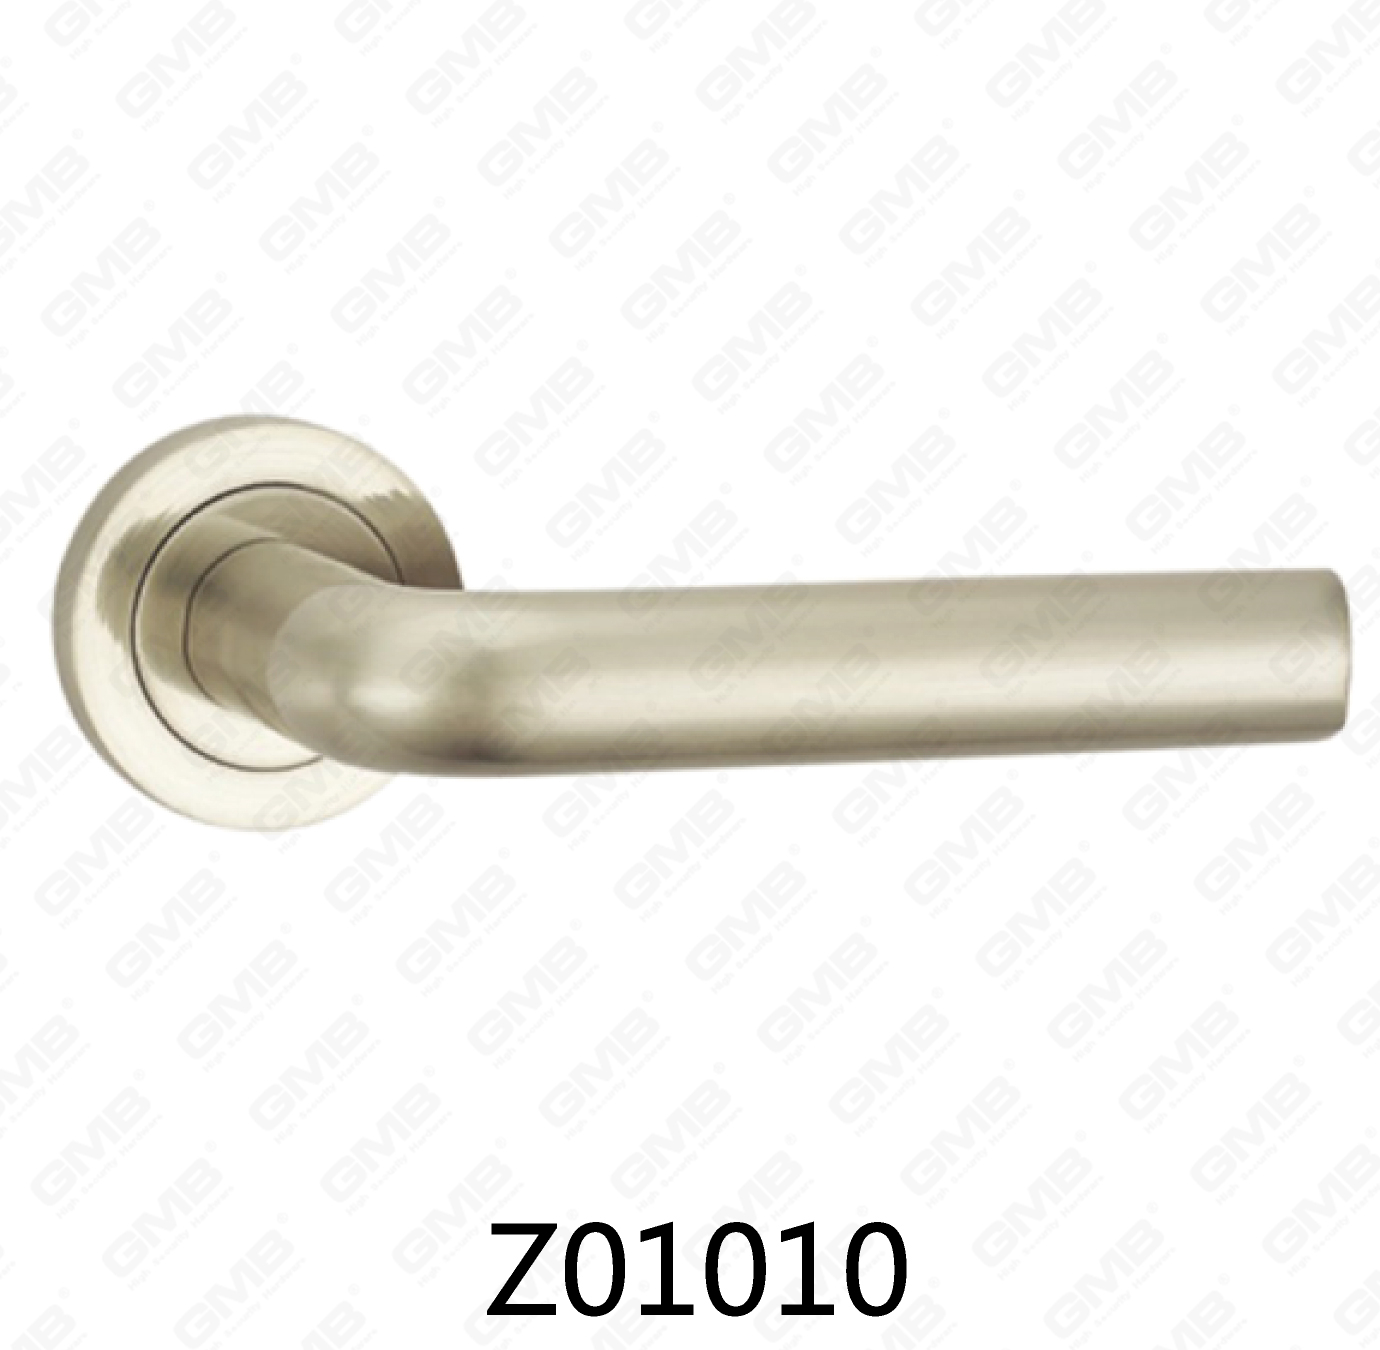 Asa de puerta de roseta de aluminio de aleación de zinc Zamak con roseta redonda (Z01010)